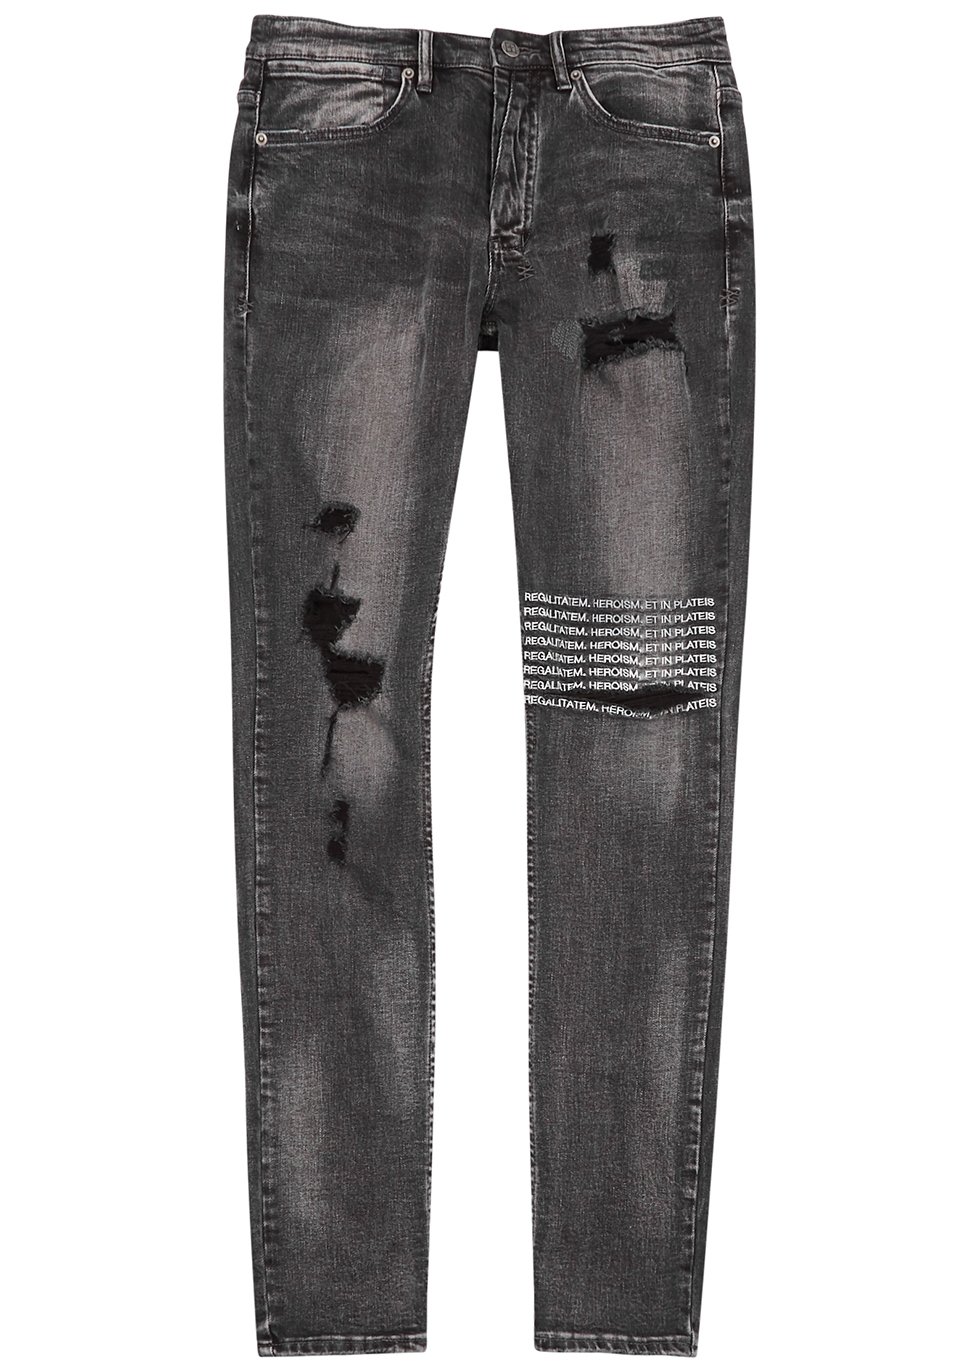 Van Winkle black distressed skinny jeans